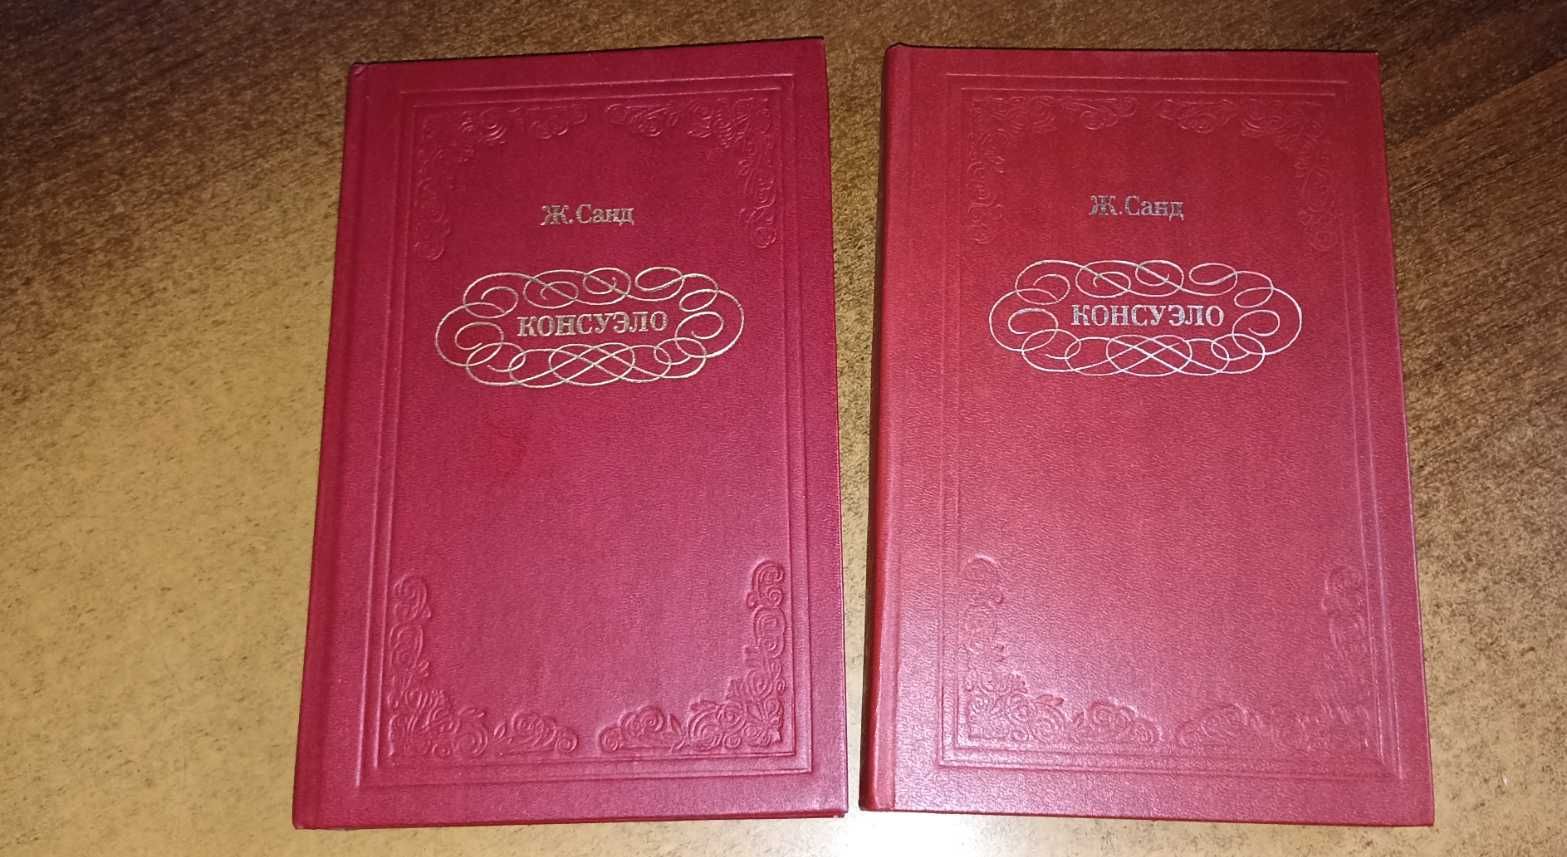 Ж. Санд - Консуэло (в двух томах)